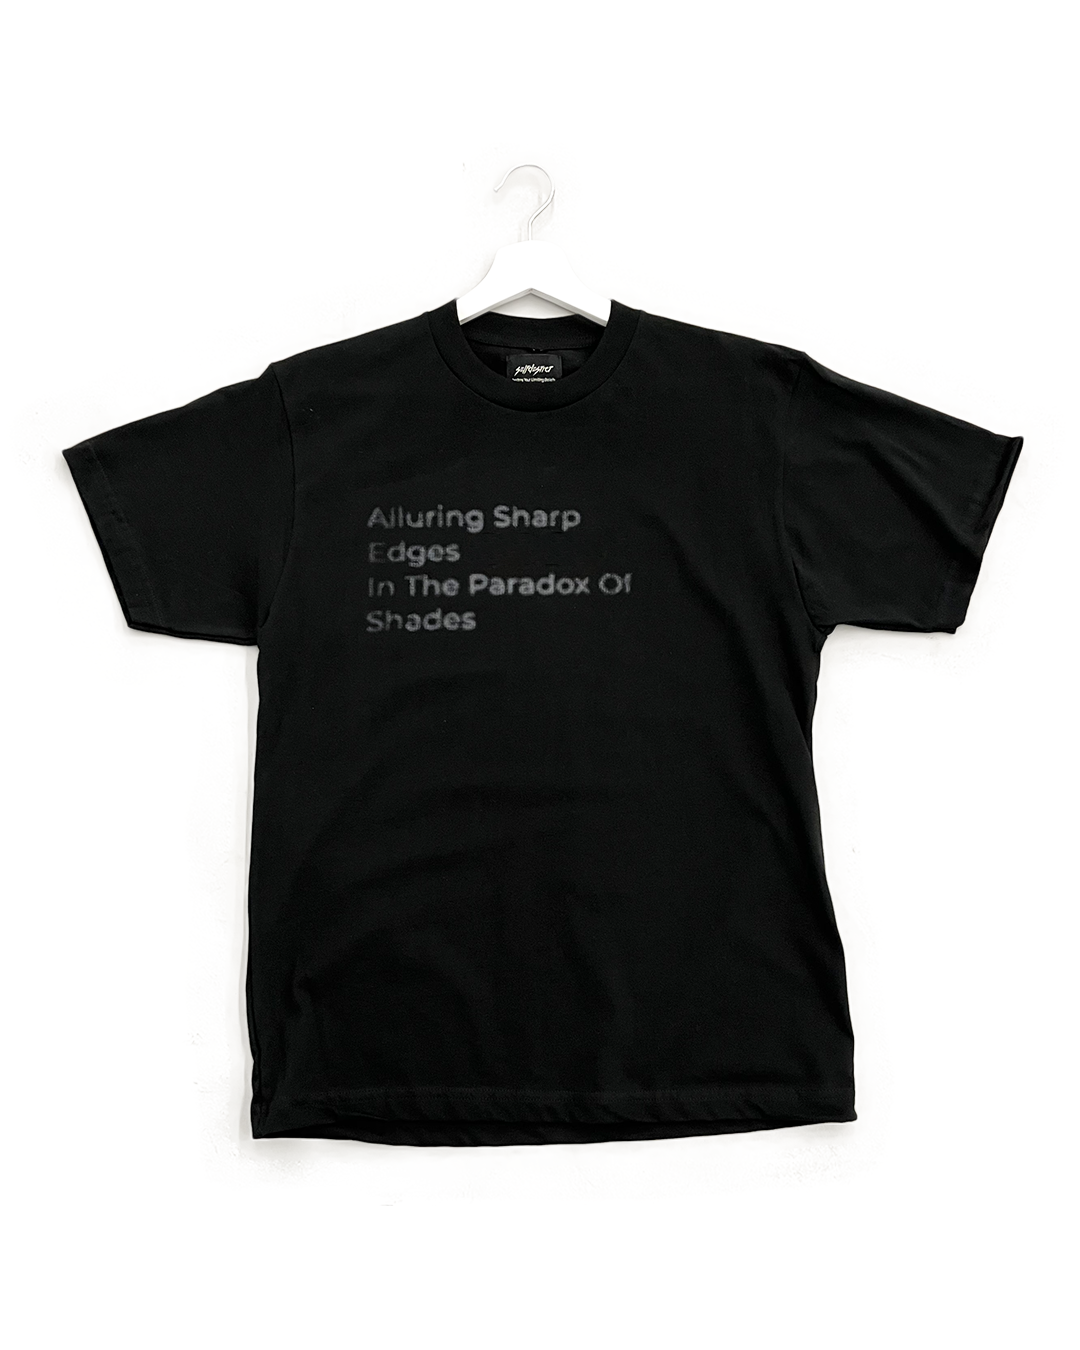 Sharp Shades T-Shirt